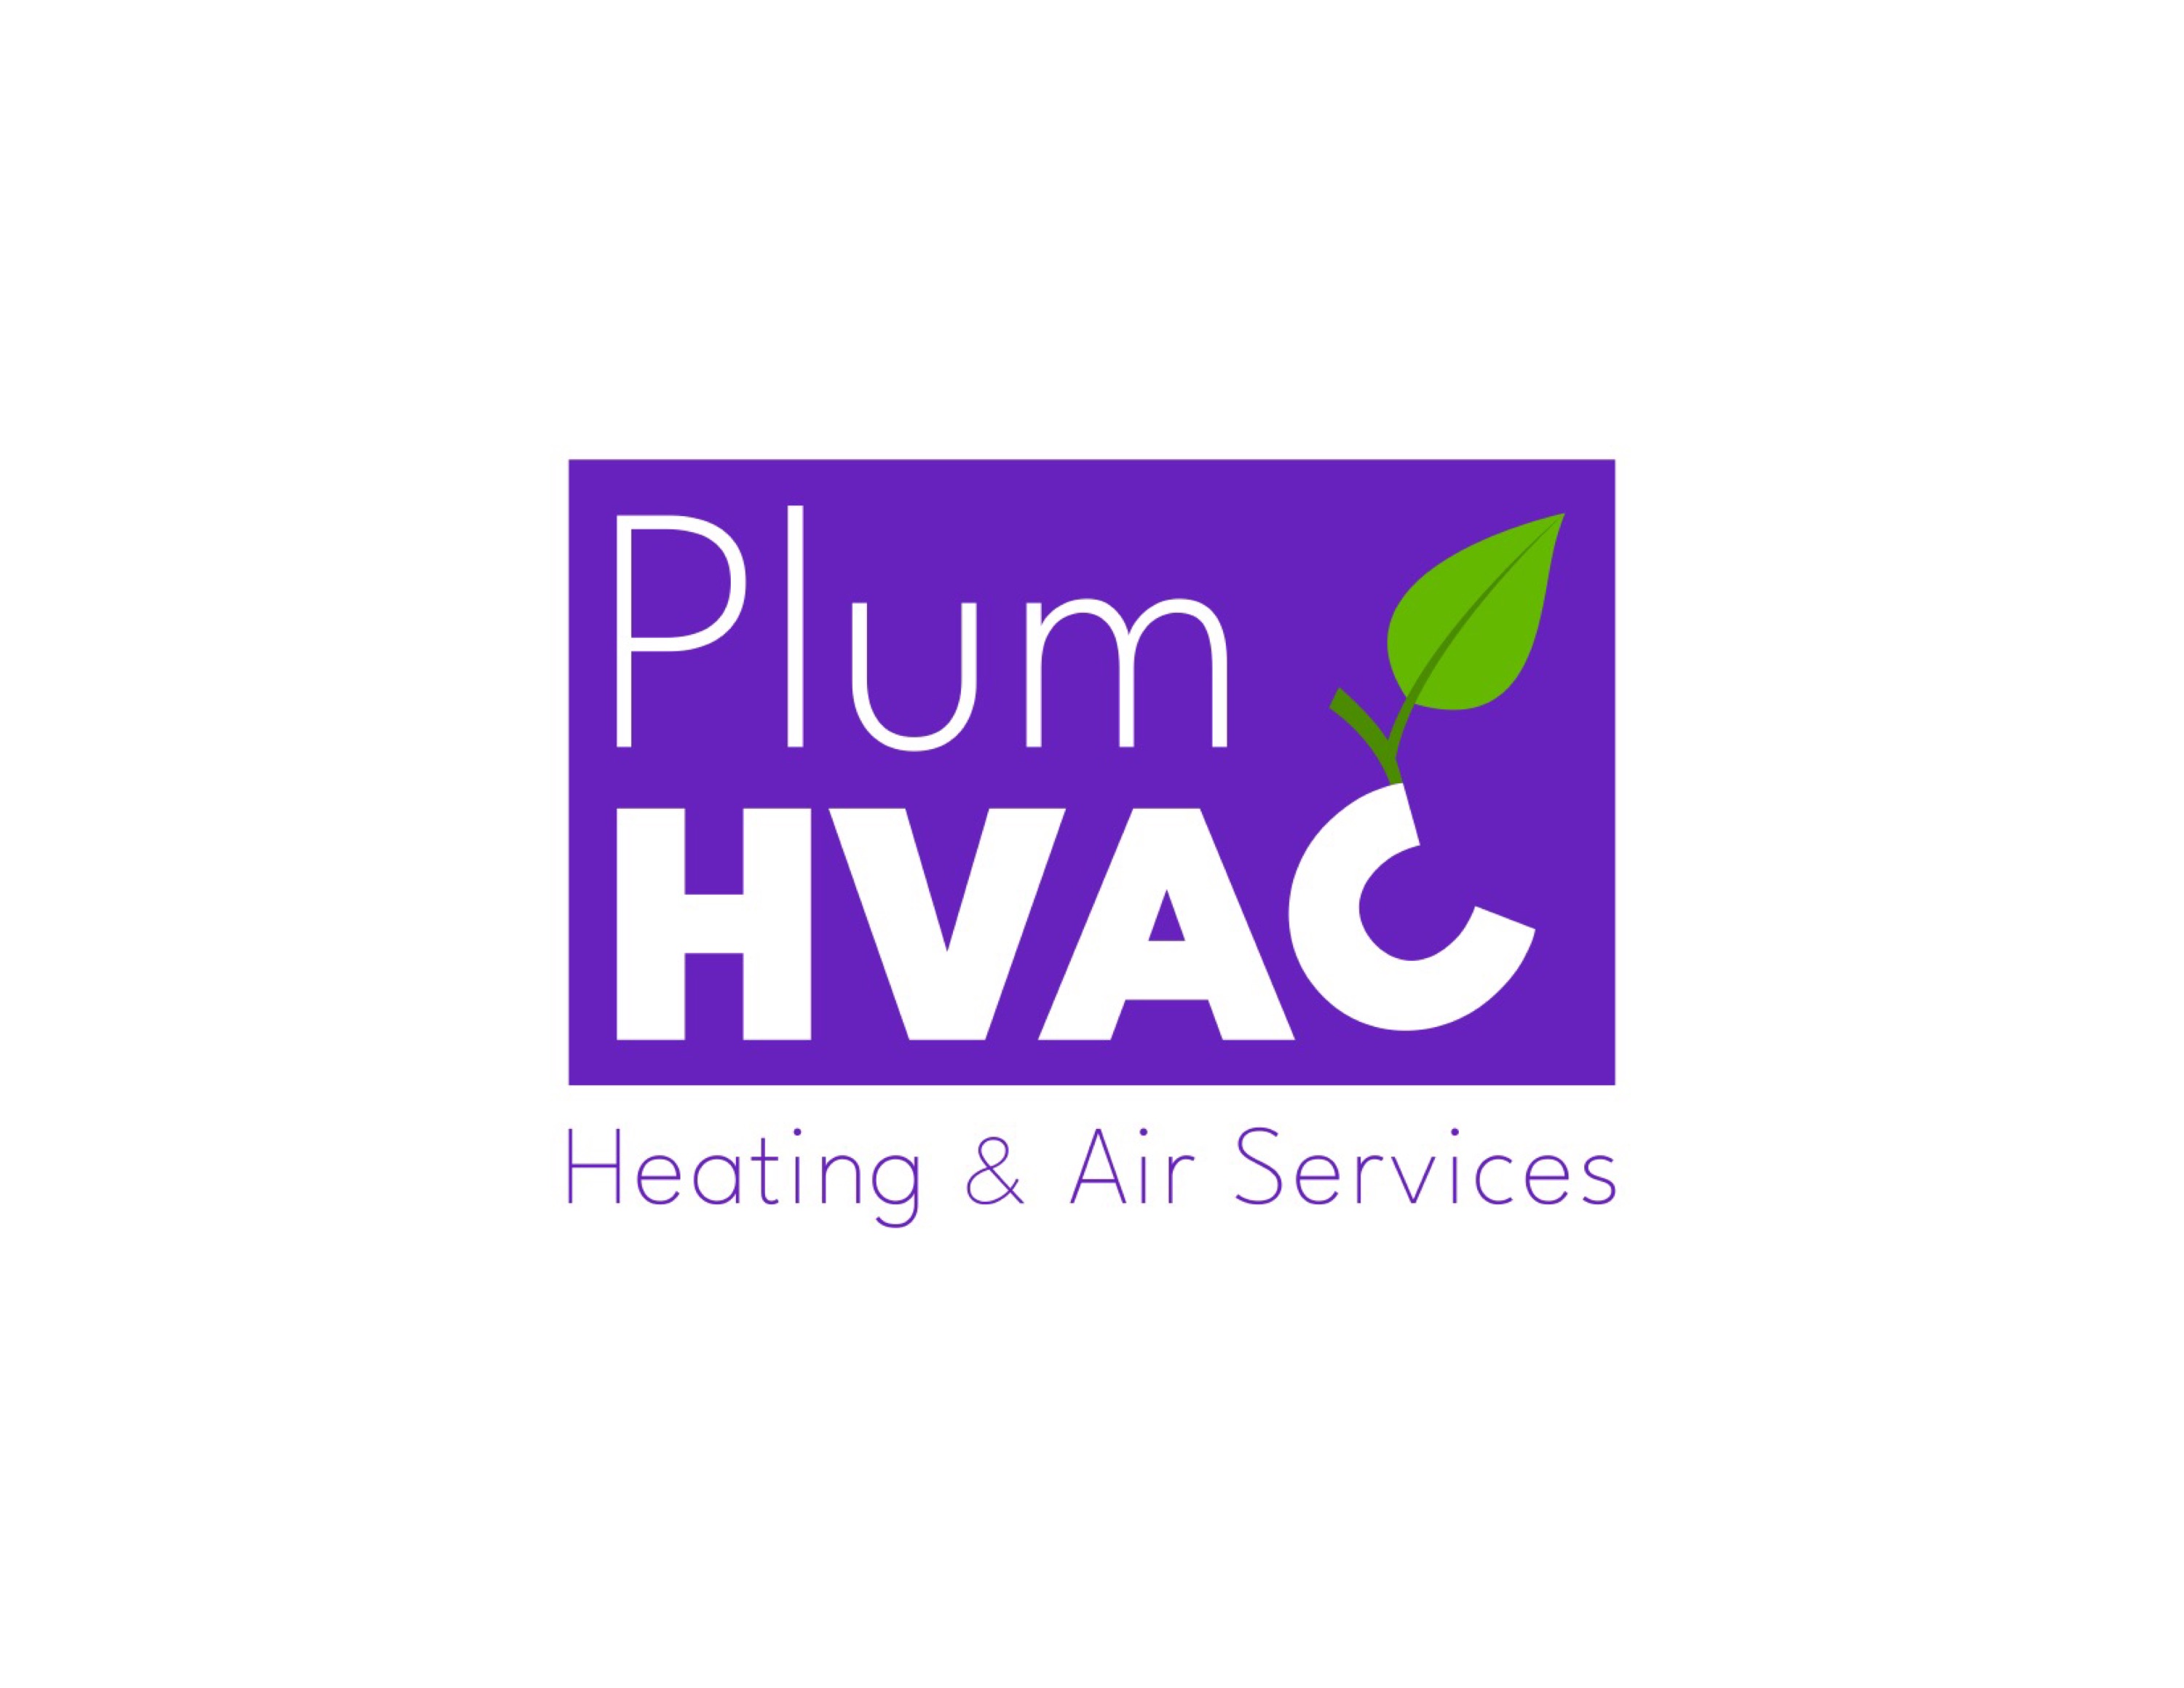 Plum HVAC Logo